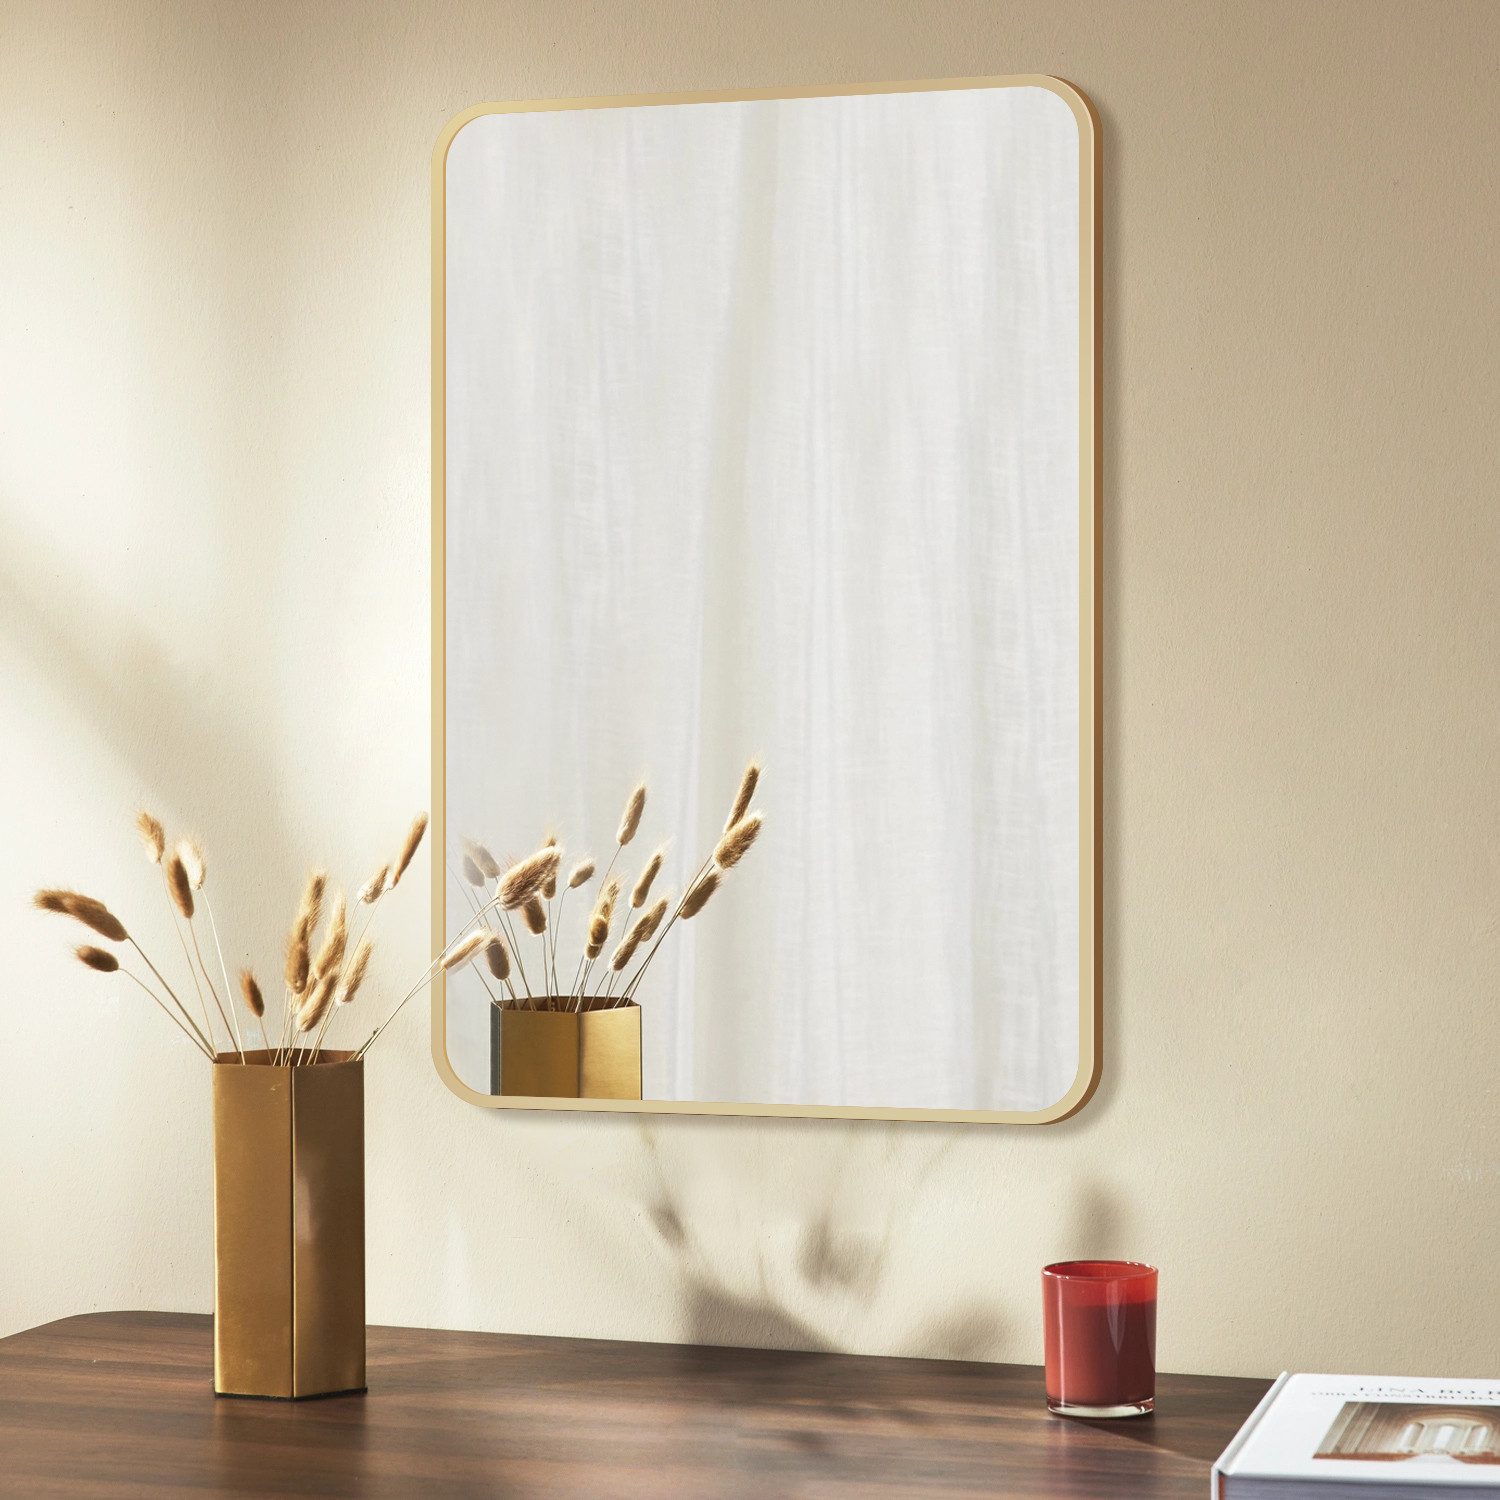 Boromal Wandspiegel 80x60 50x70 40x60 Spiegel Gold Flurspiegel Dekospiegel Rechteckig (5mm Umweltschutz Spiegel, mit Aluminium Rahmen), Vertikal / Horizontal möglich